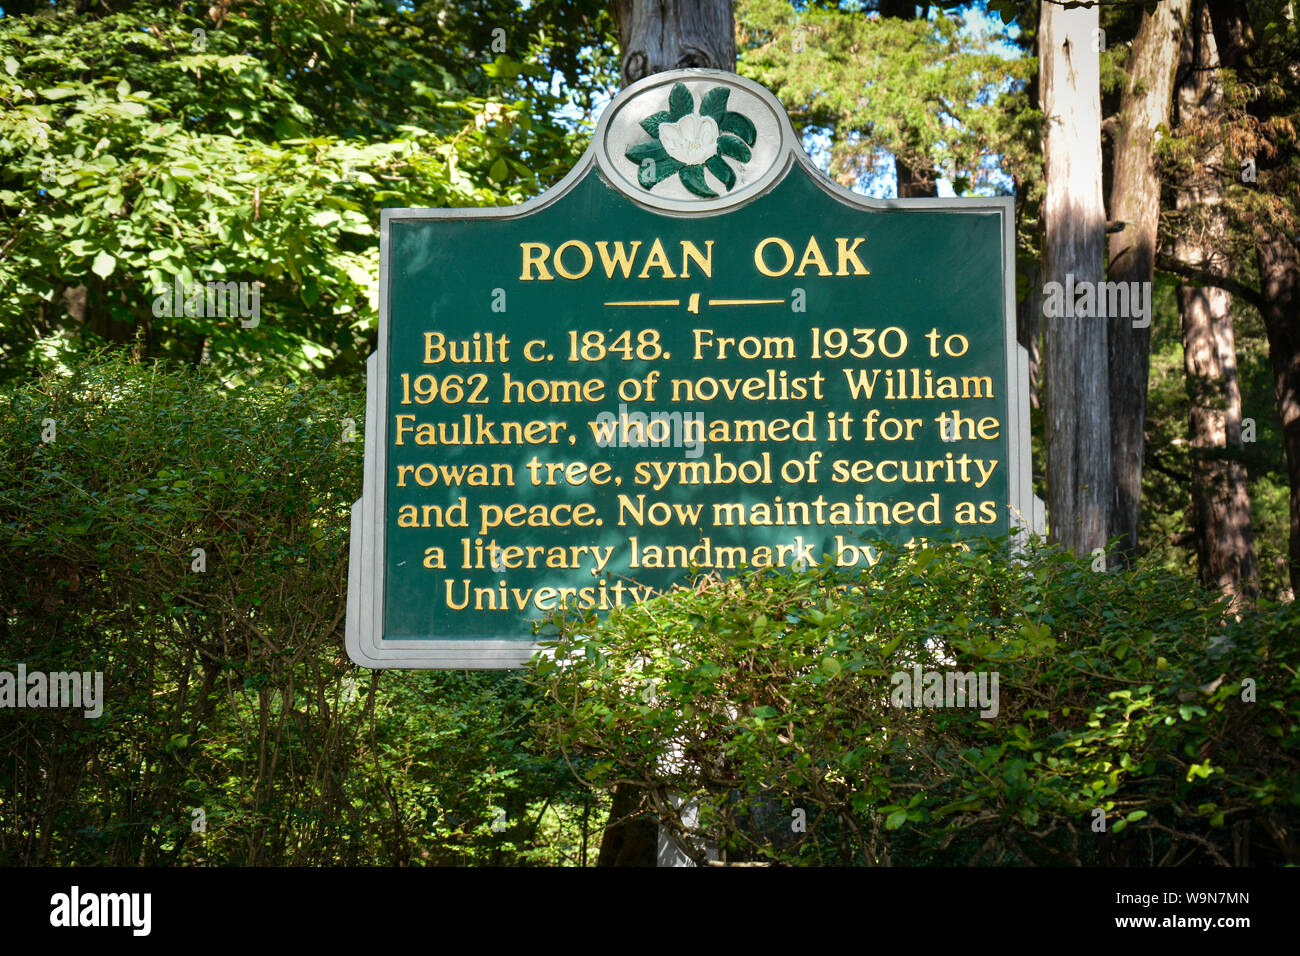 Eine literarische Wahrzeichen Marker für Rowan Oak, der Heimat der Pultizer preisgekrönte Schriftsteller William Faulkner, Oxford, MS, USA, Stockfoto